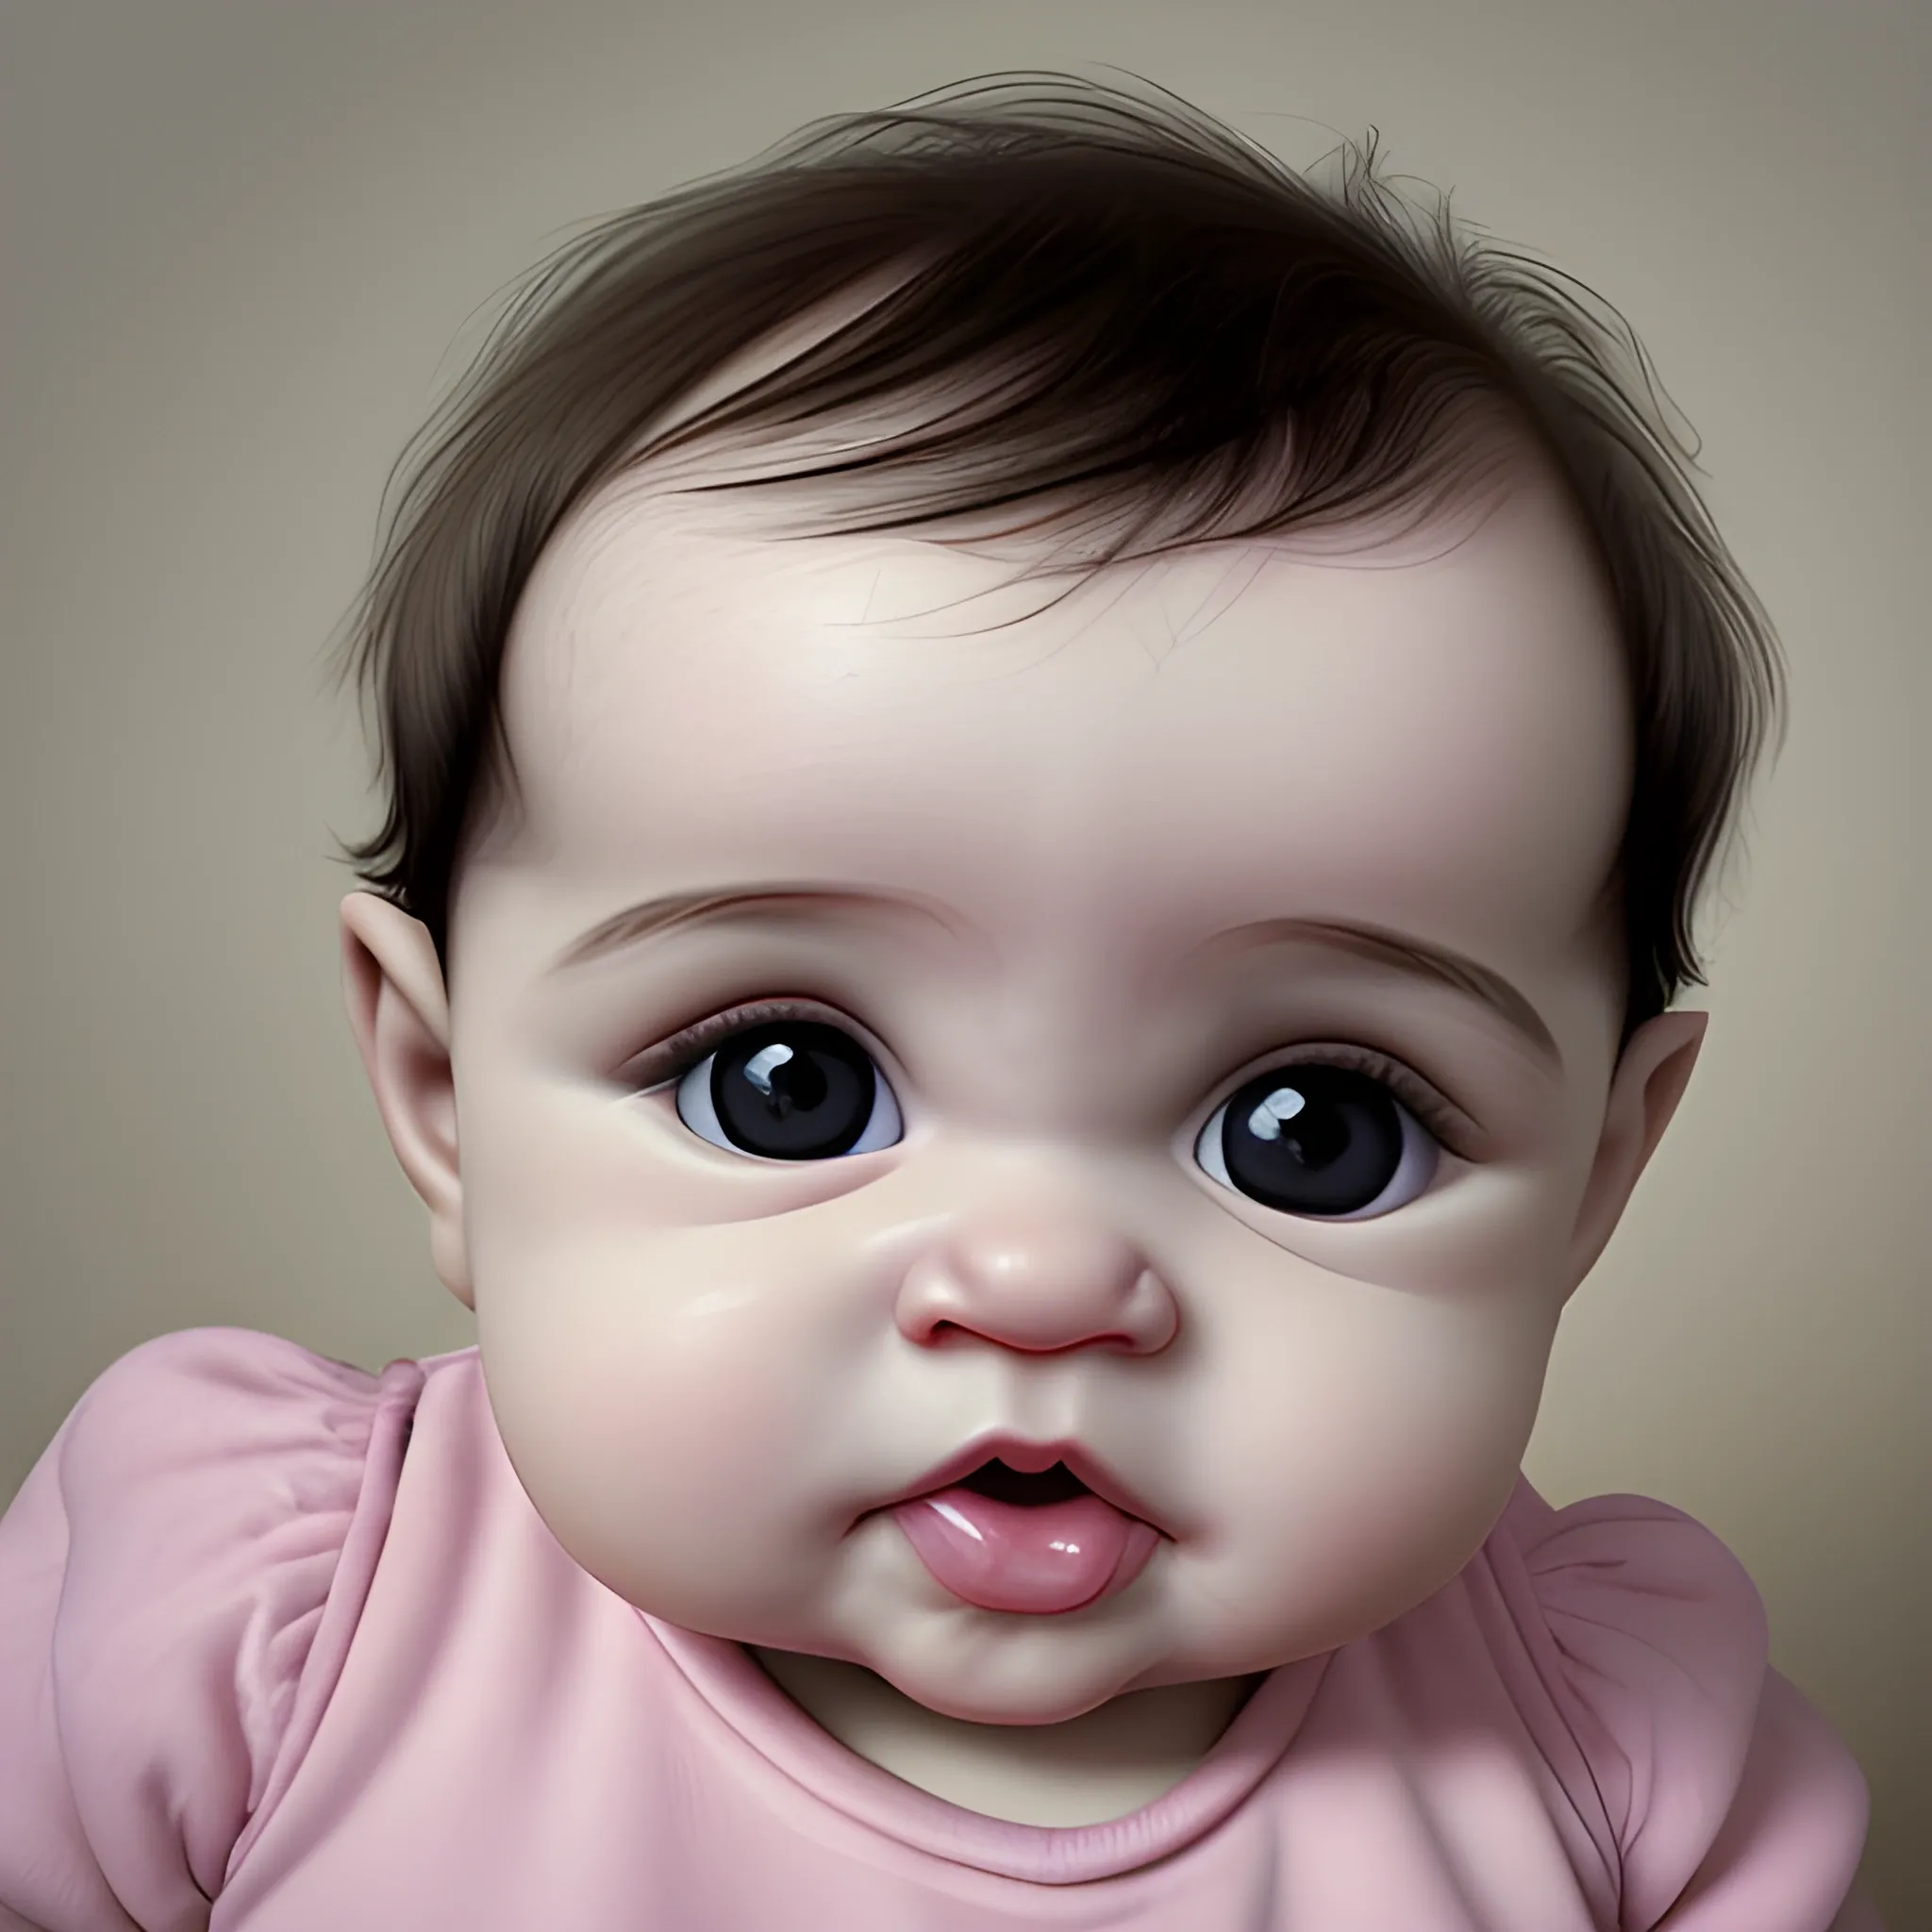 el rostro de un bebe en hiperrealismo hasta los hombros, el bebe es rubio y de ojos grises, labios gordos y con baba, esta chupando un juguete y con la mirada al frente
